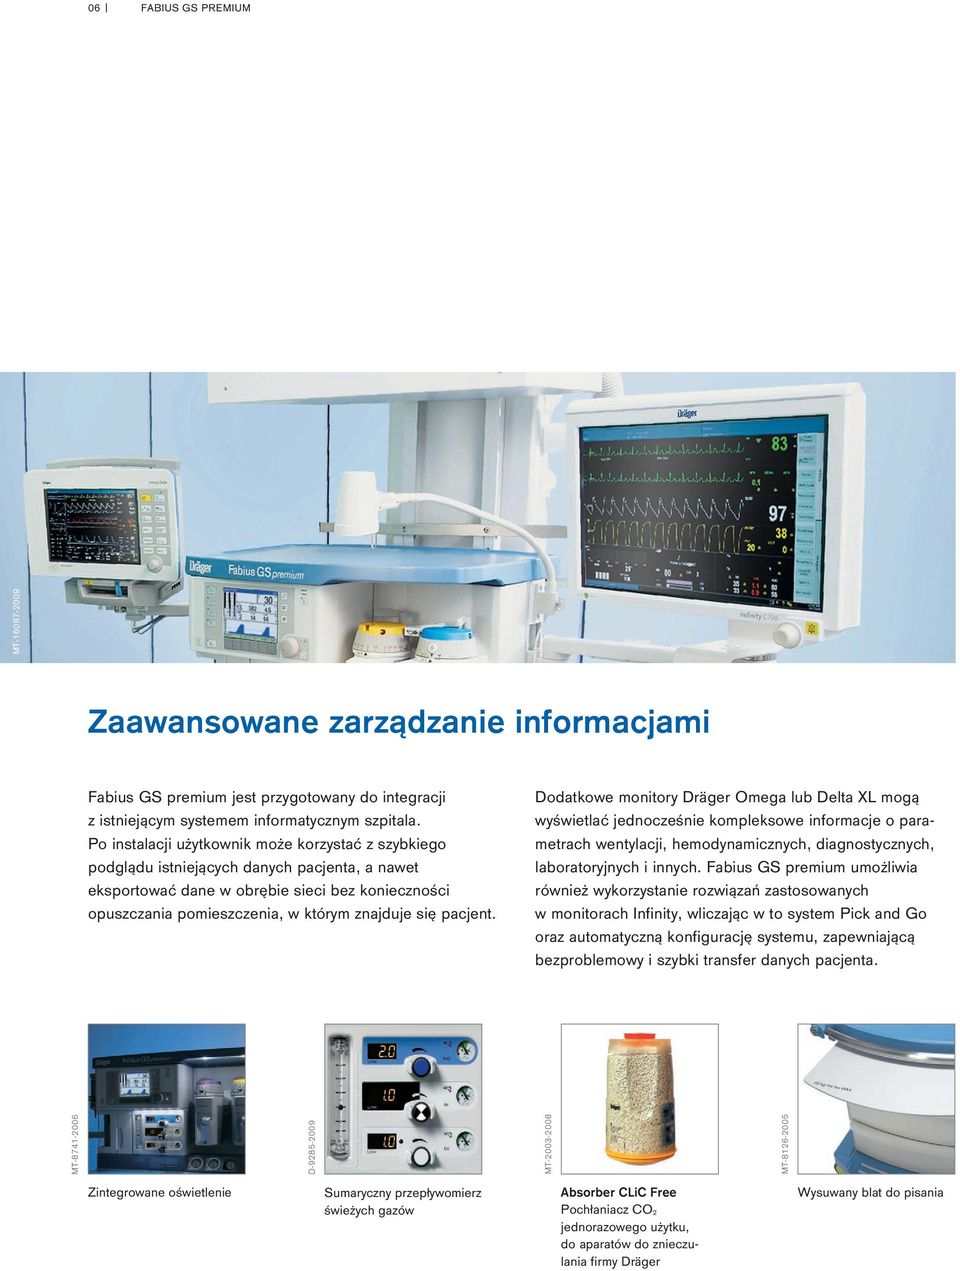 pacjent. Dodatkowe monitory Dräger Omega lub Delta XL mogą wyświetlać jednocześnie kompleksowe informacje o parametrach wentylacji, hemodynamicznych, diagnostycznych, laboratoryjnych i innych.